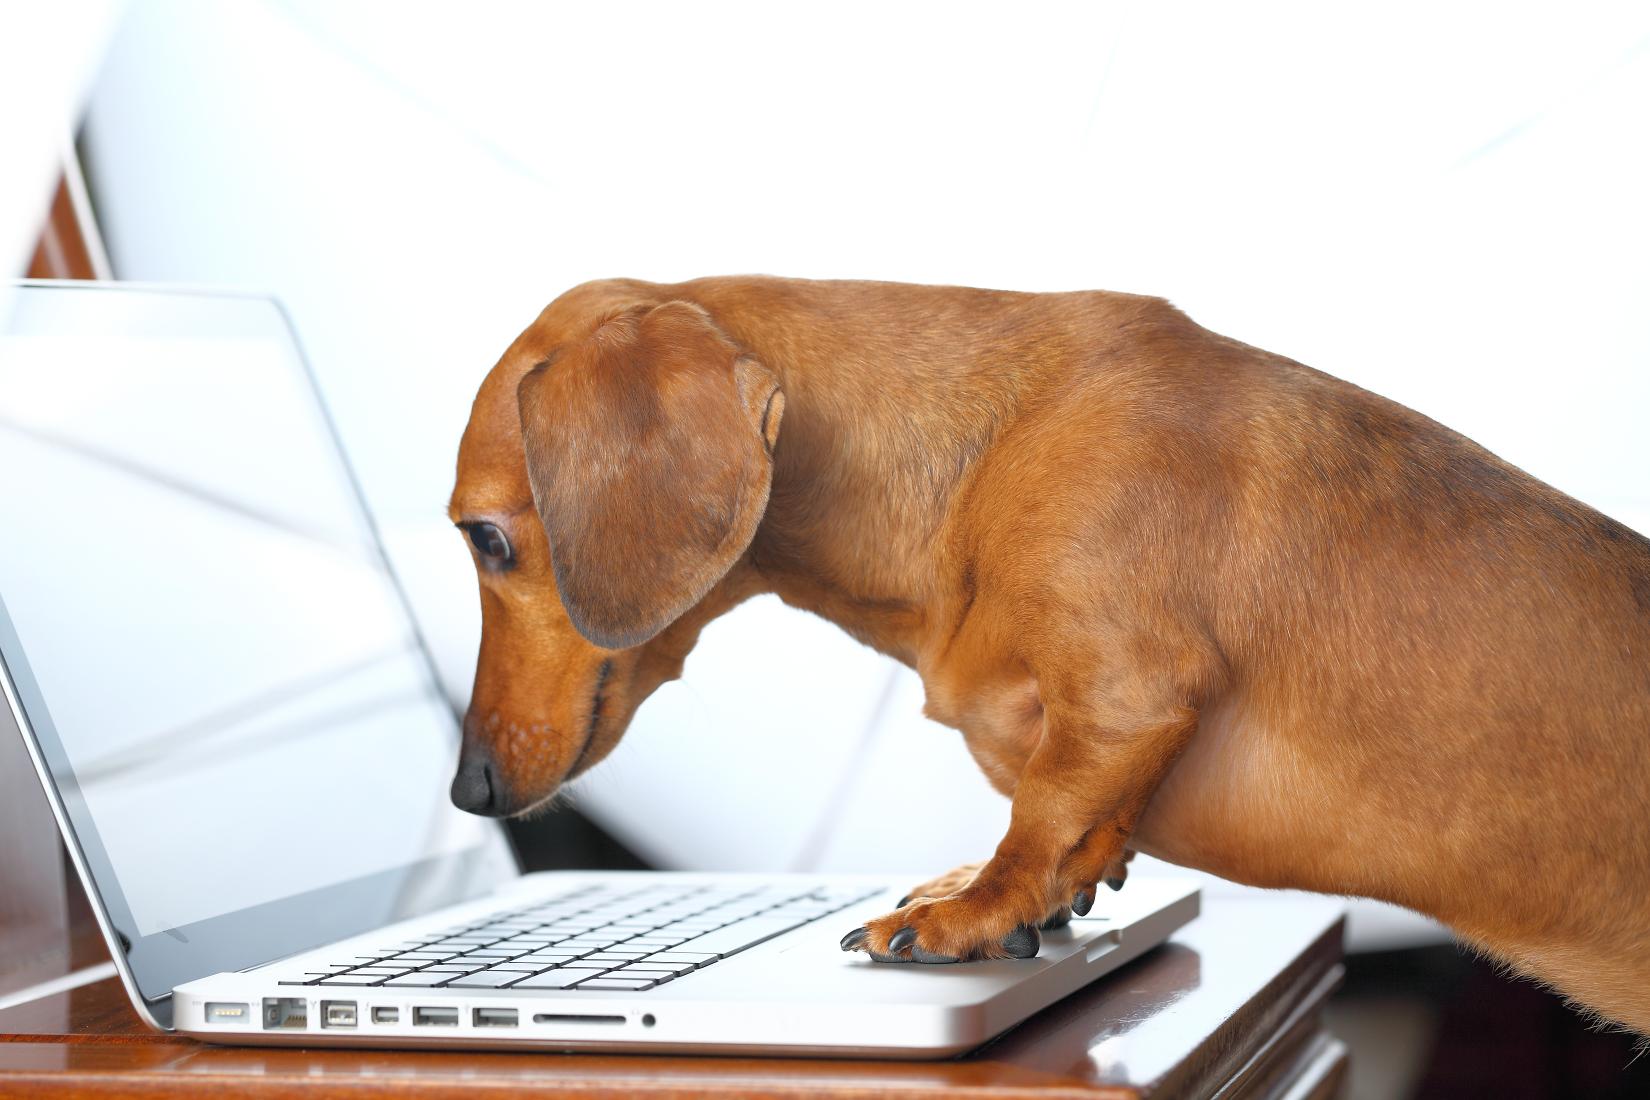 dachshund dog using laptop.